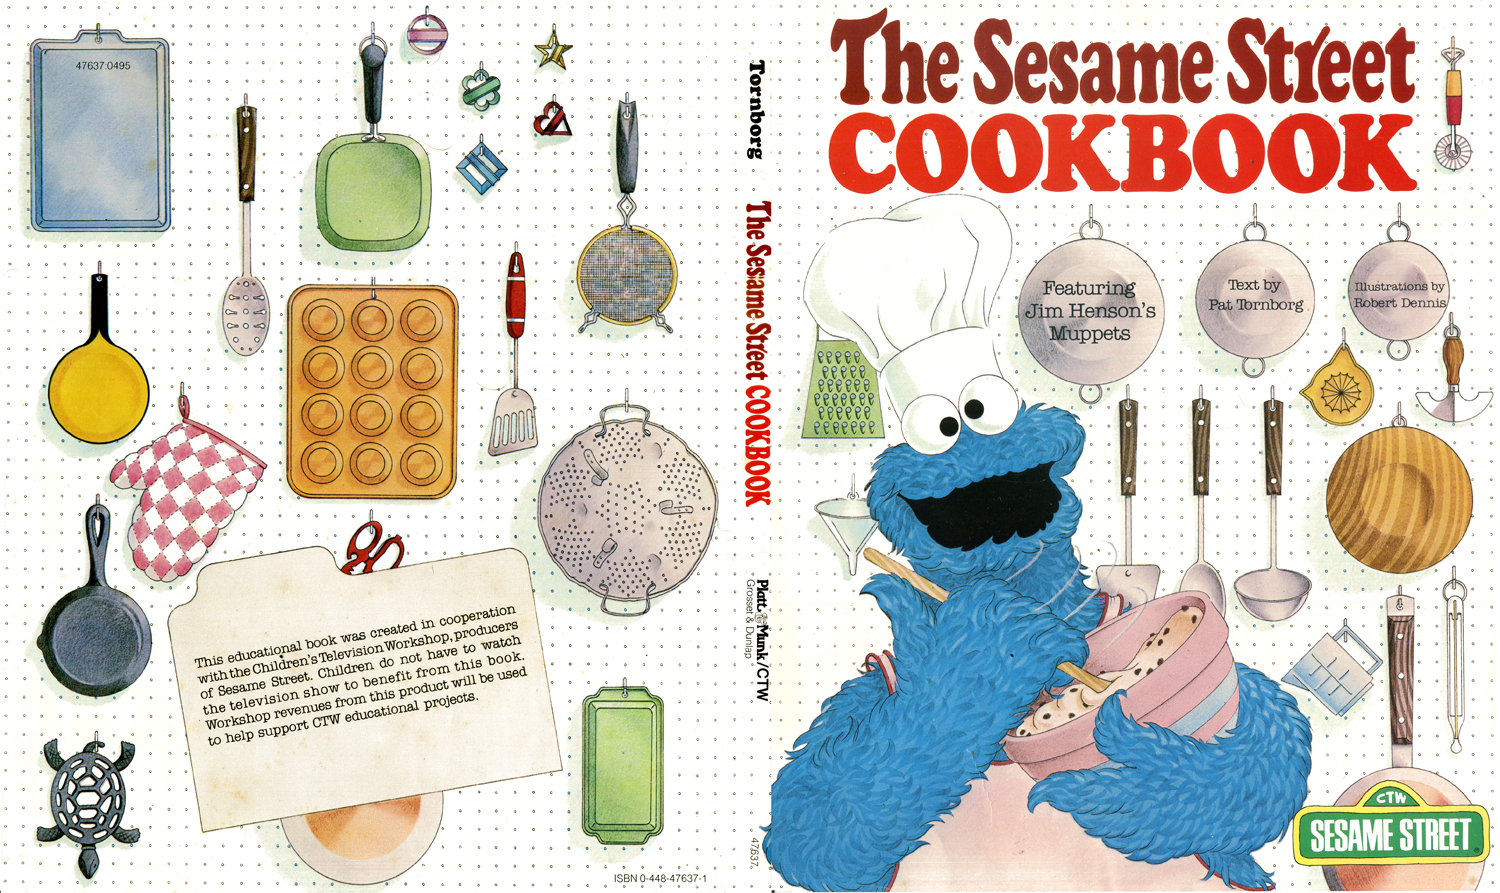 rob-dennis-ss_cookbook_cover